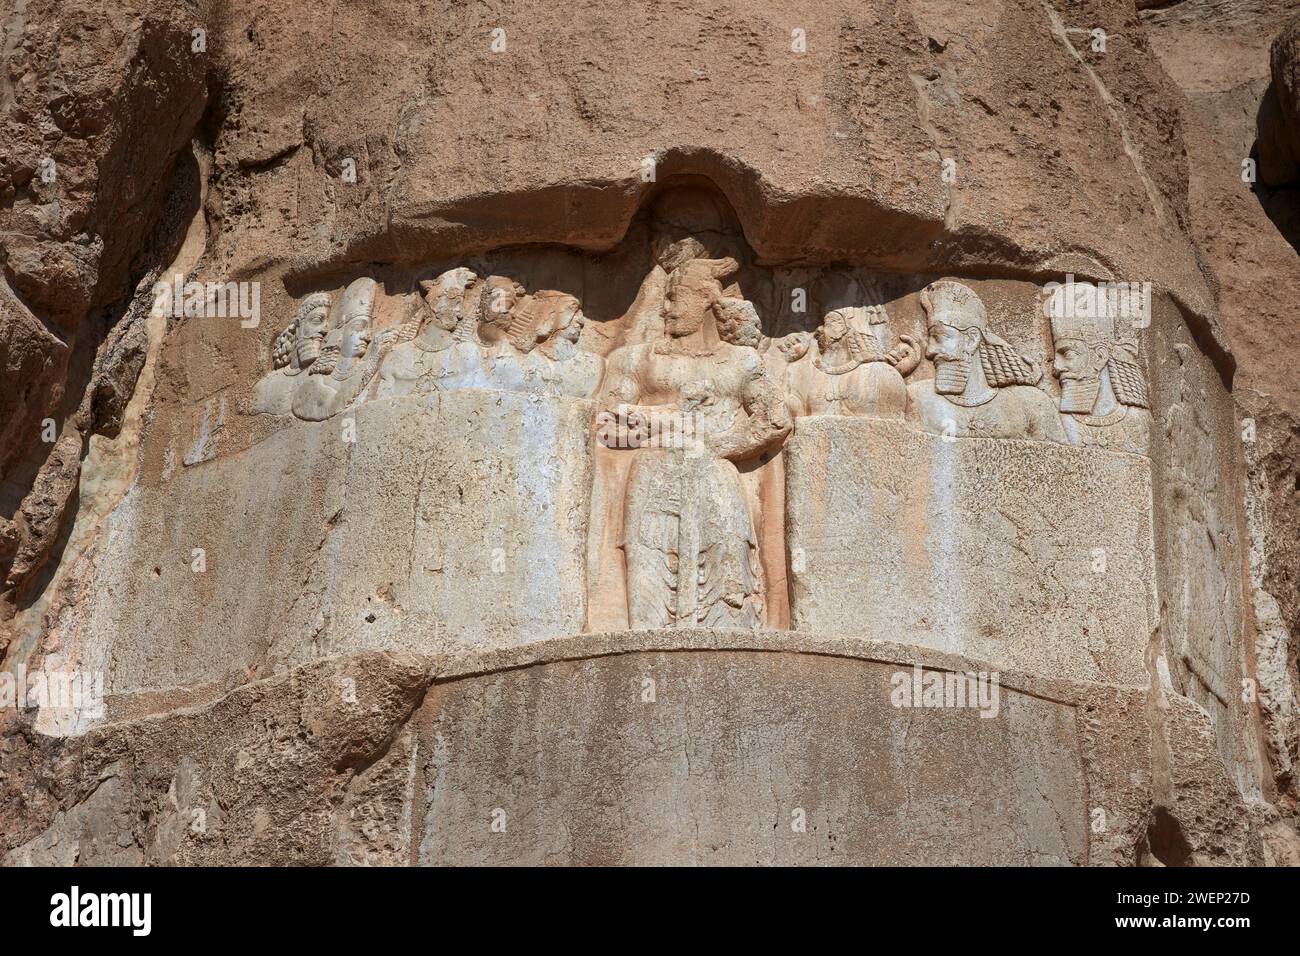 Relief rocheux du roi persan Bahram II et de sa famille royale sculptés sur le relief élamites daté du 3e millénaire av. J.-C.. Nécropole de Naqsh-e Rostam, Iran Banque D'Images